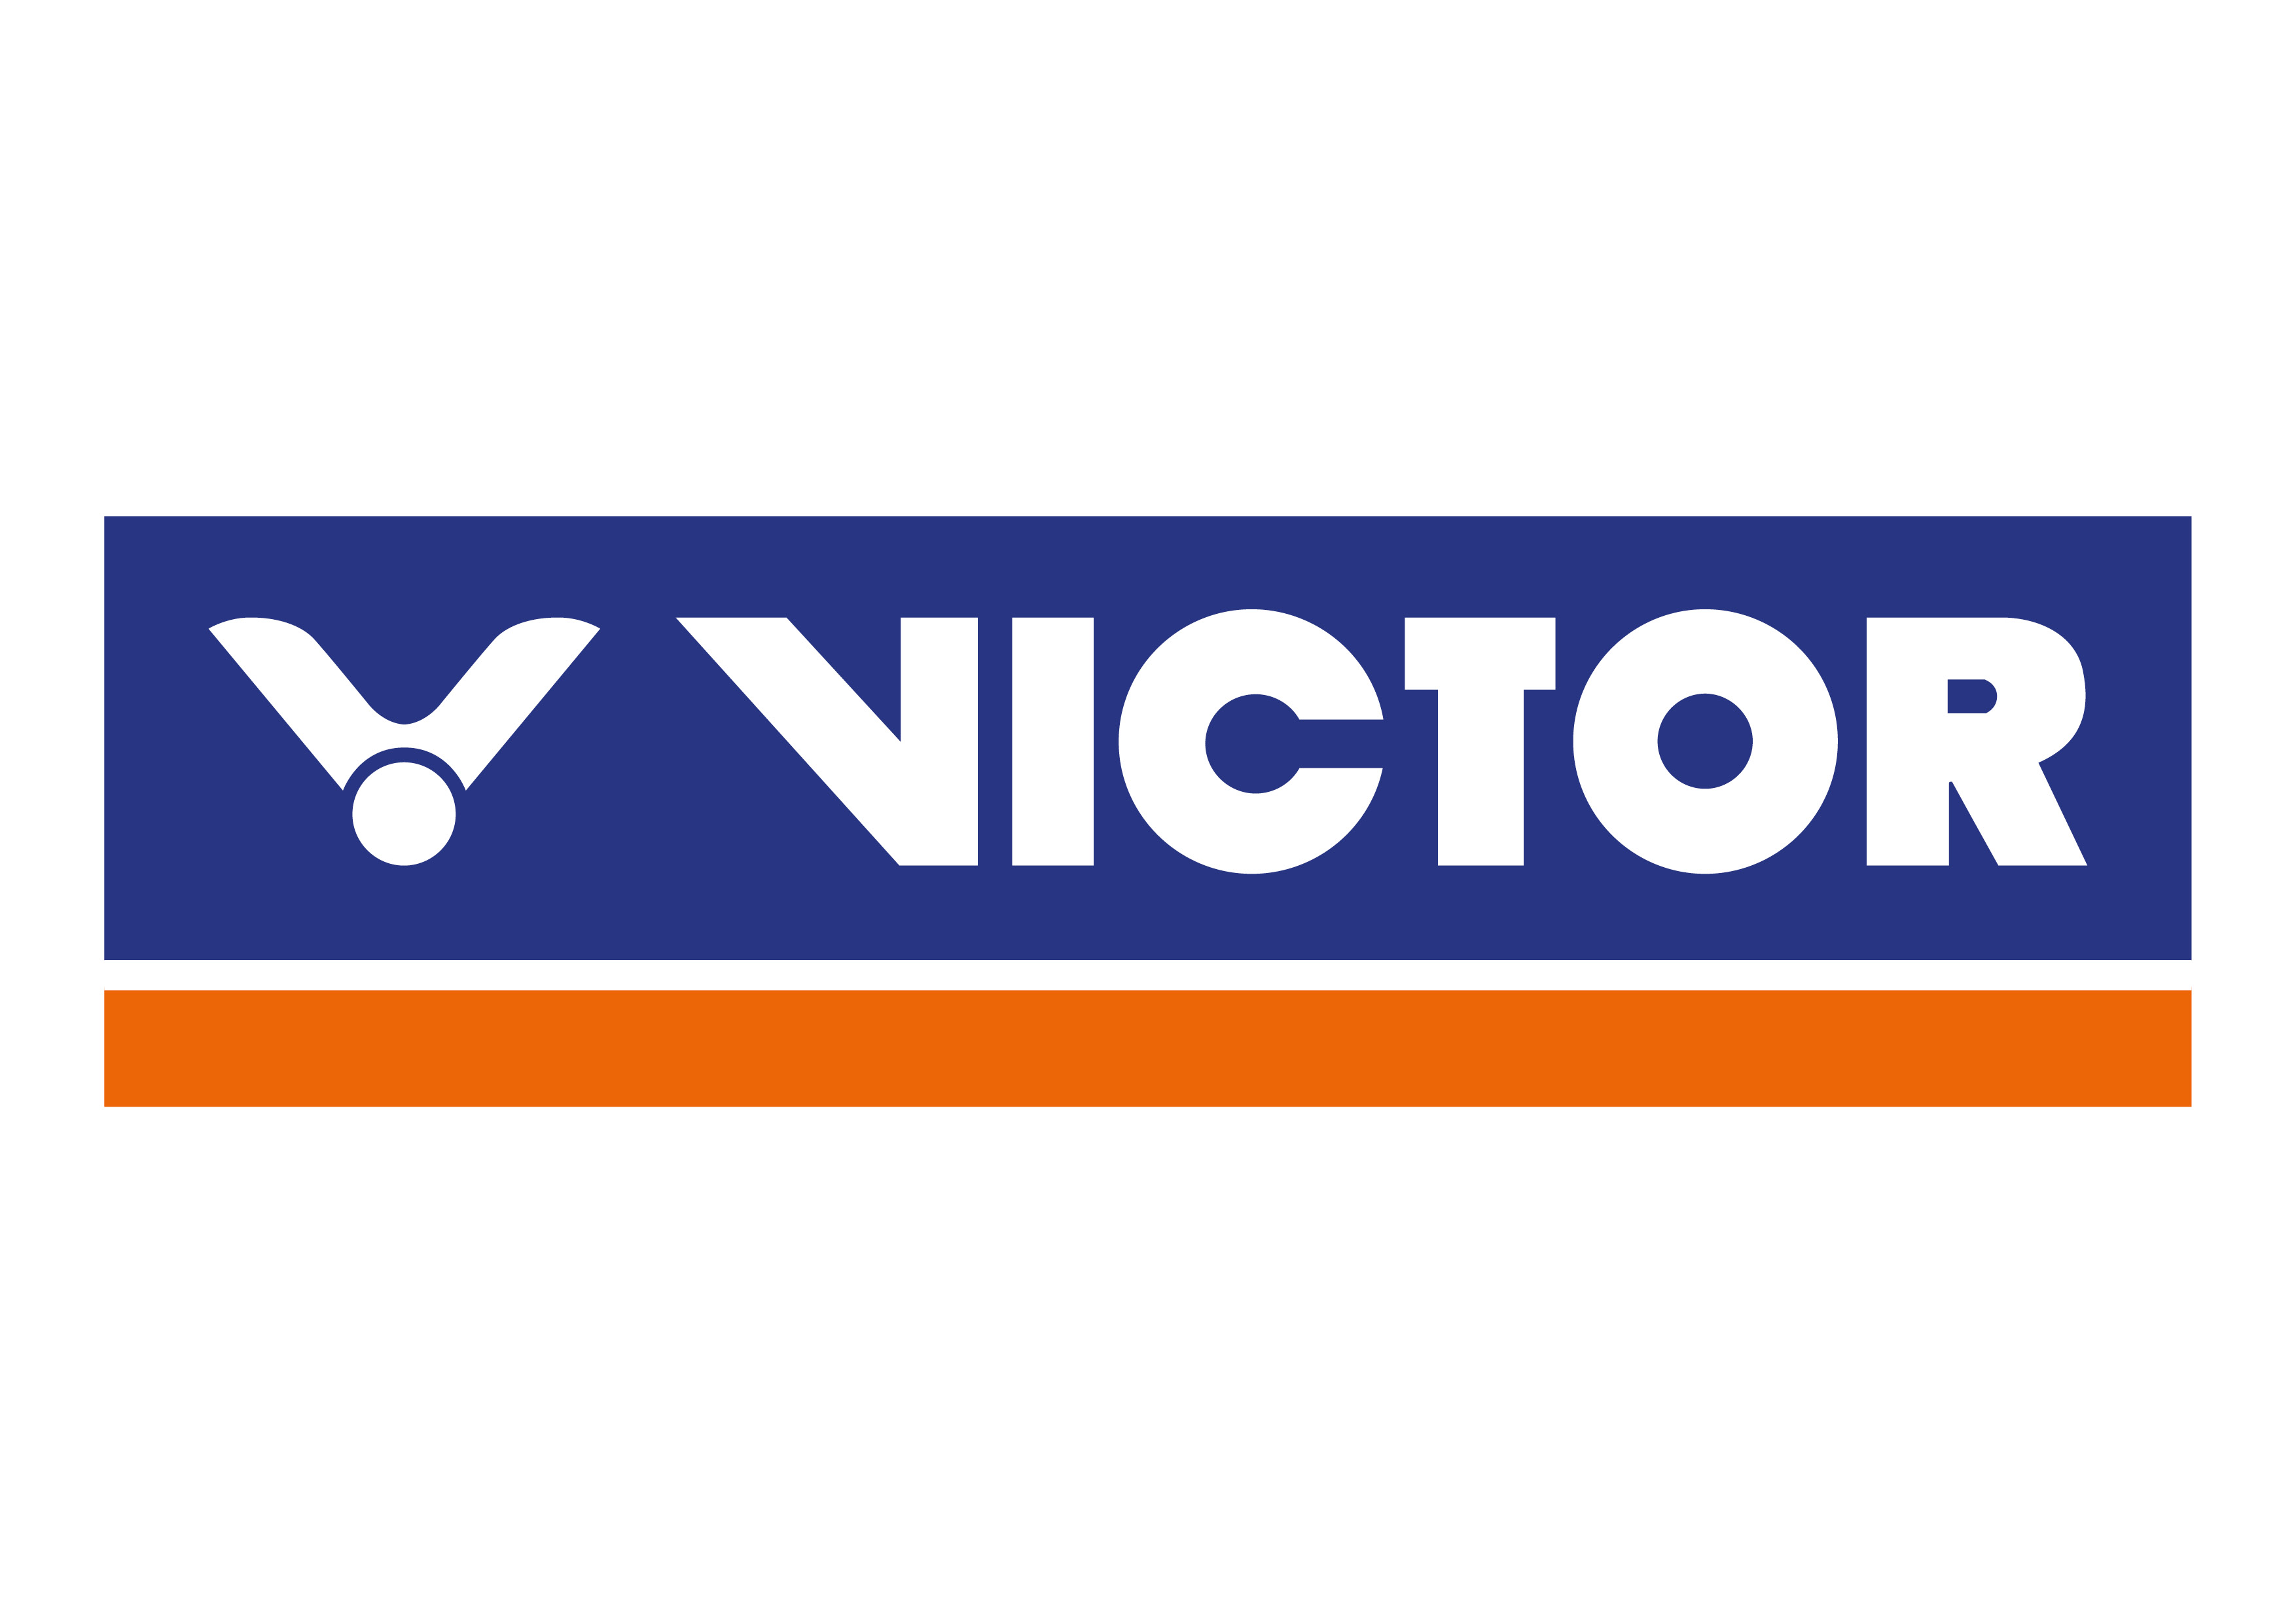 victor austria logo4 klein